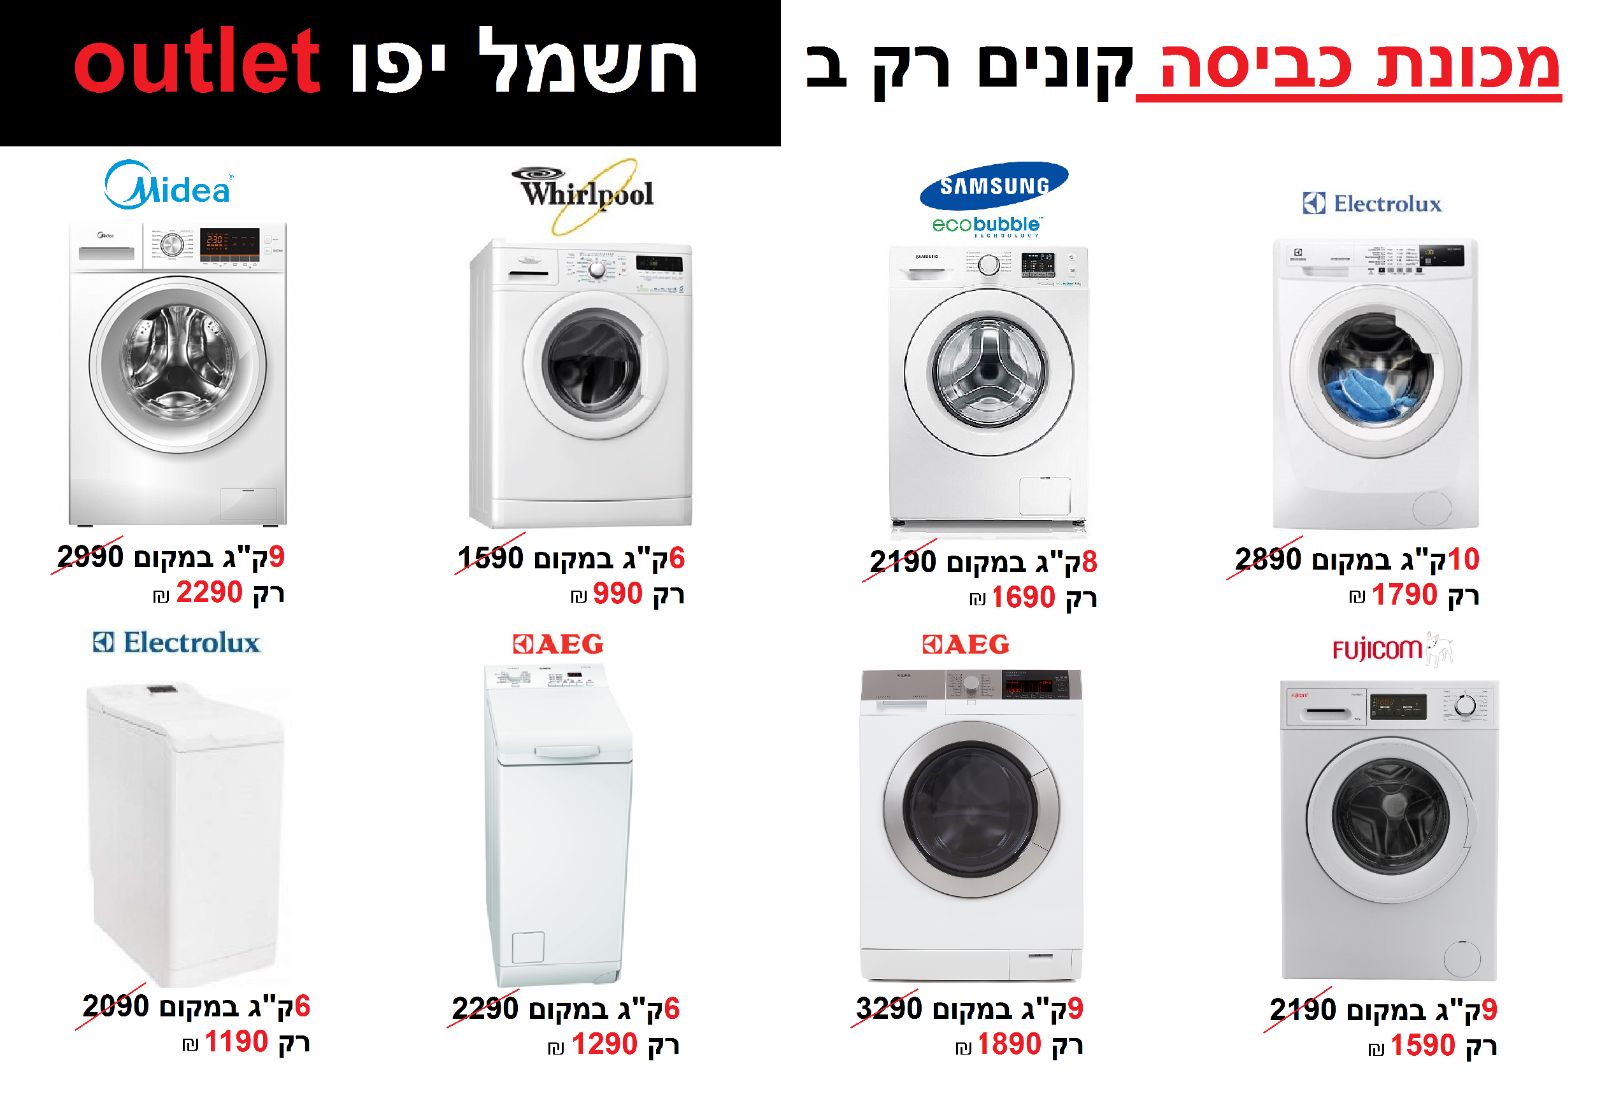 طالع الاسعار - حملة تخفيضات كبيرة في صالة كهرباء يافا Outlet 